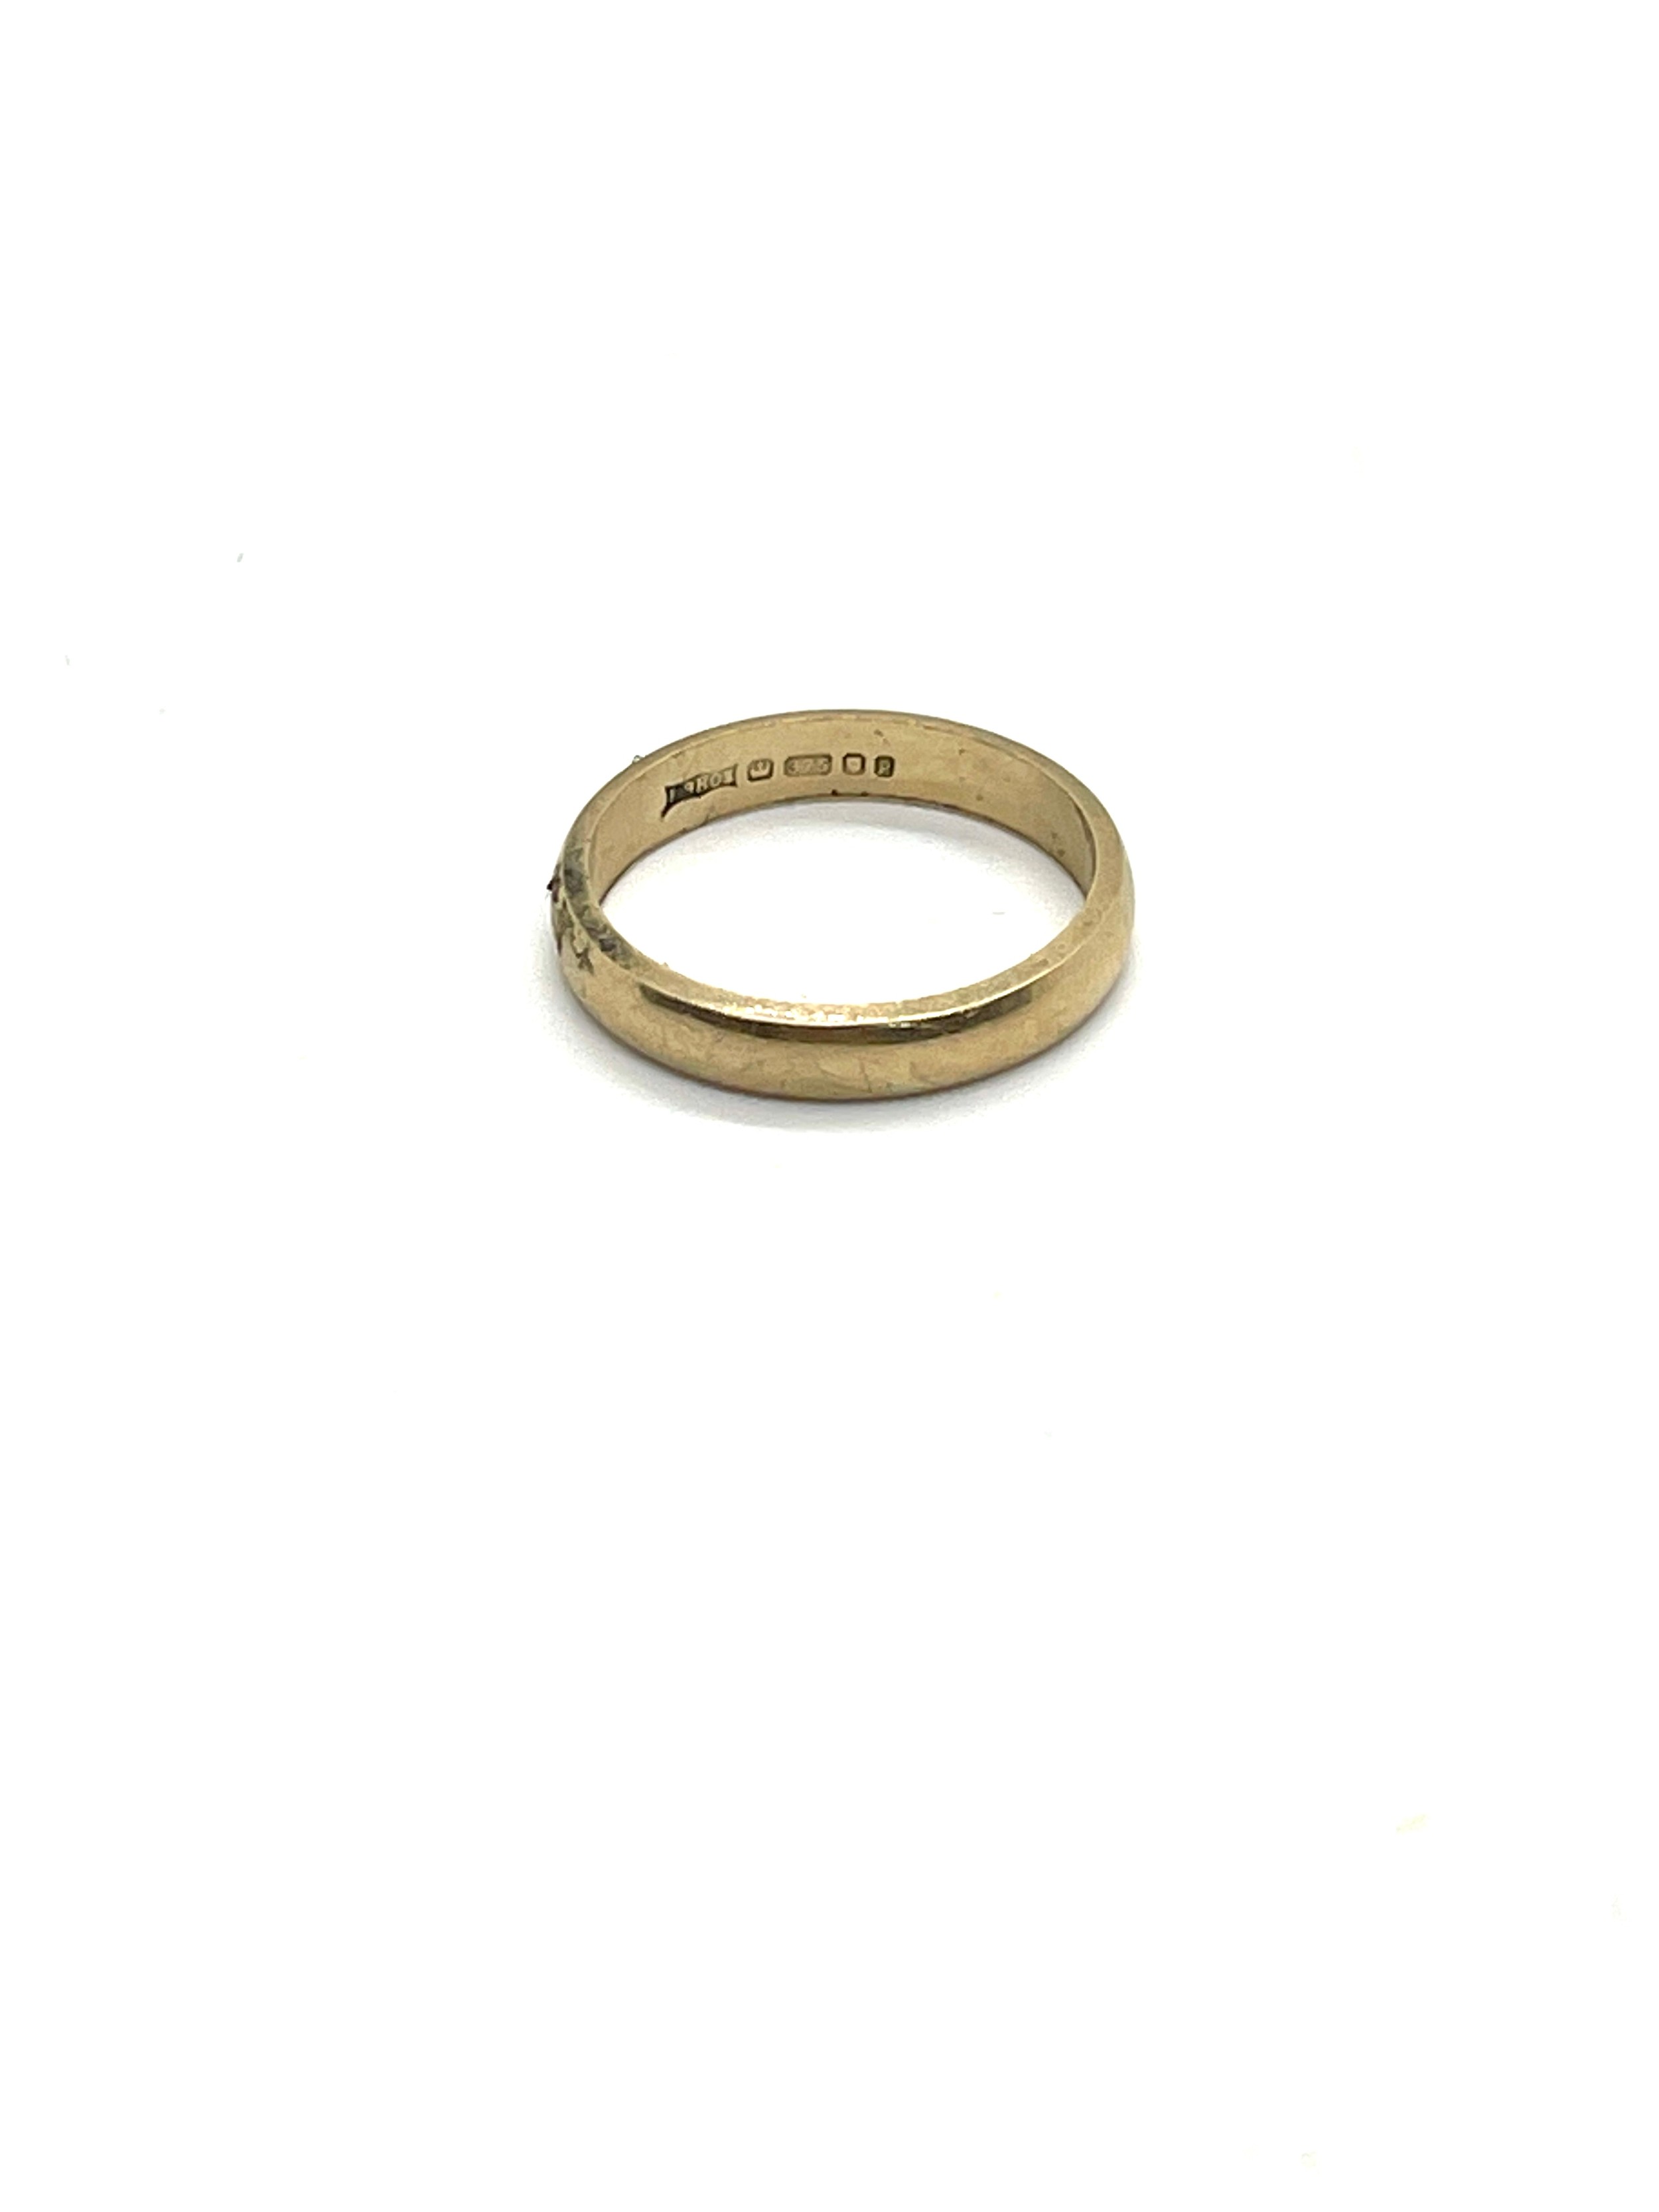 Ladies 9ct gold wedding band, ring size I/J, total weight 1.8 - Bild 2 aus 3